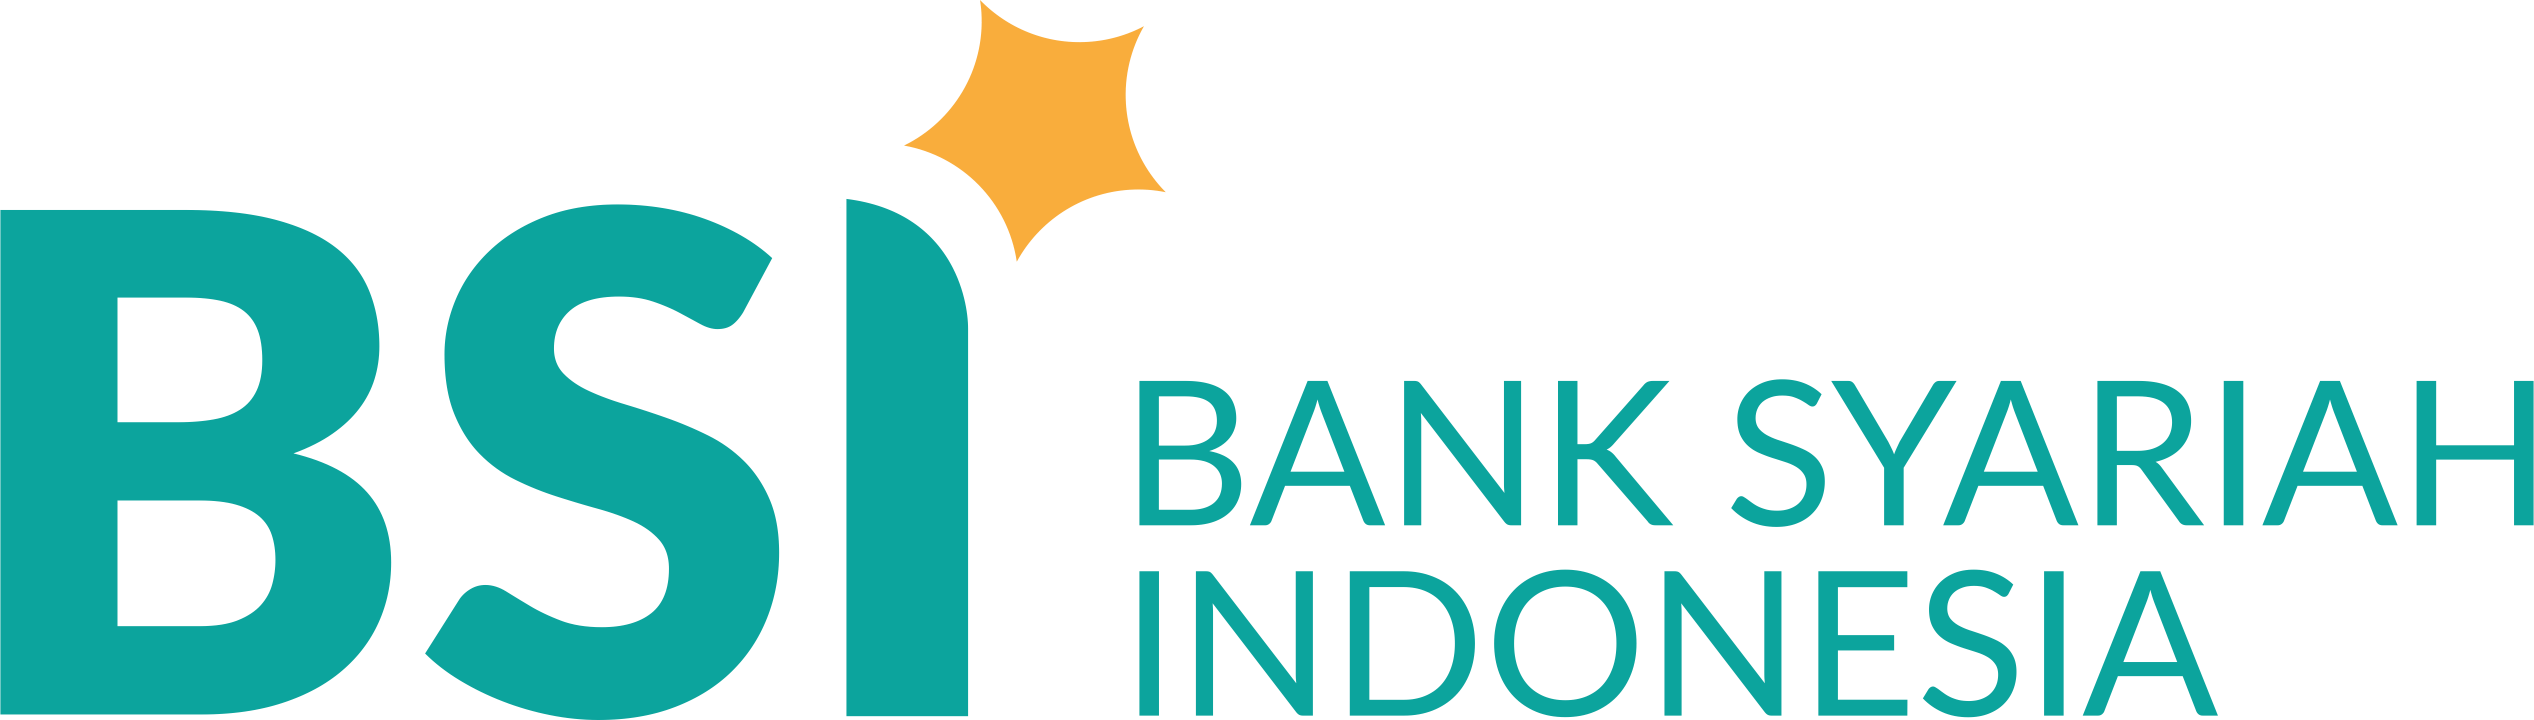 BSI (Bank Syariah Indonesia) Logo (PNG720p) – Vector69Com – GER Indonesia